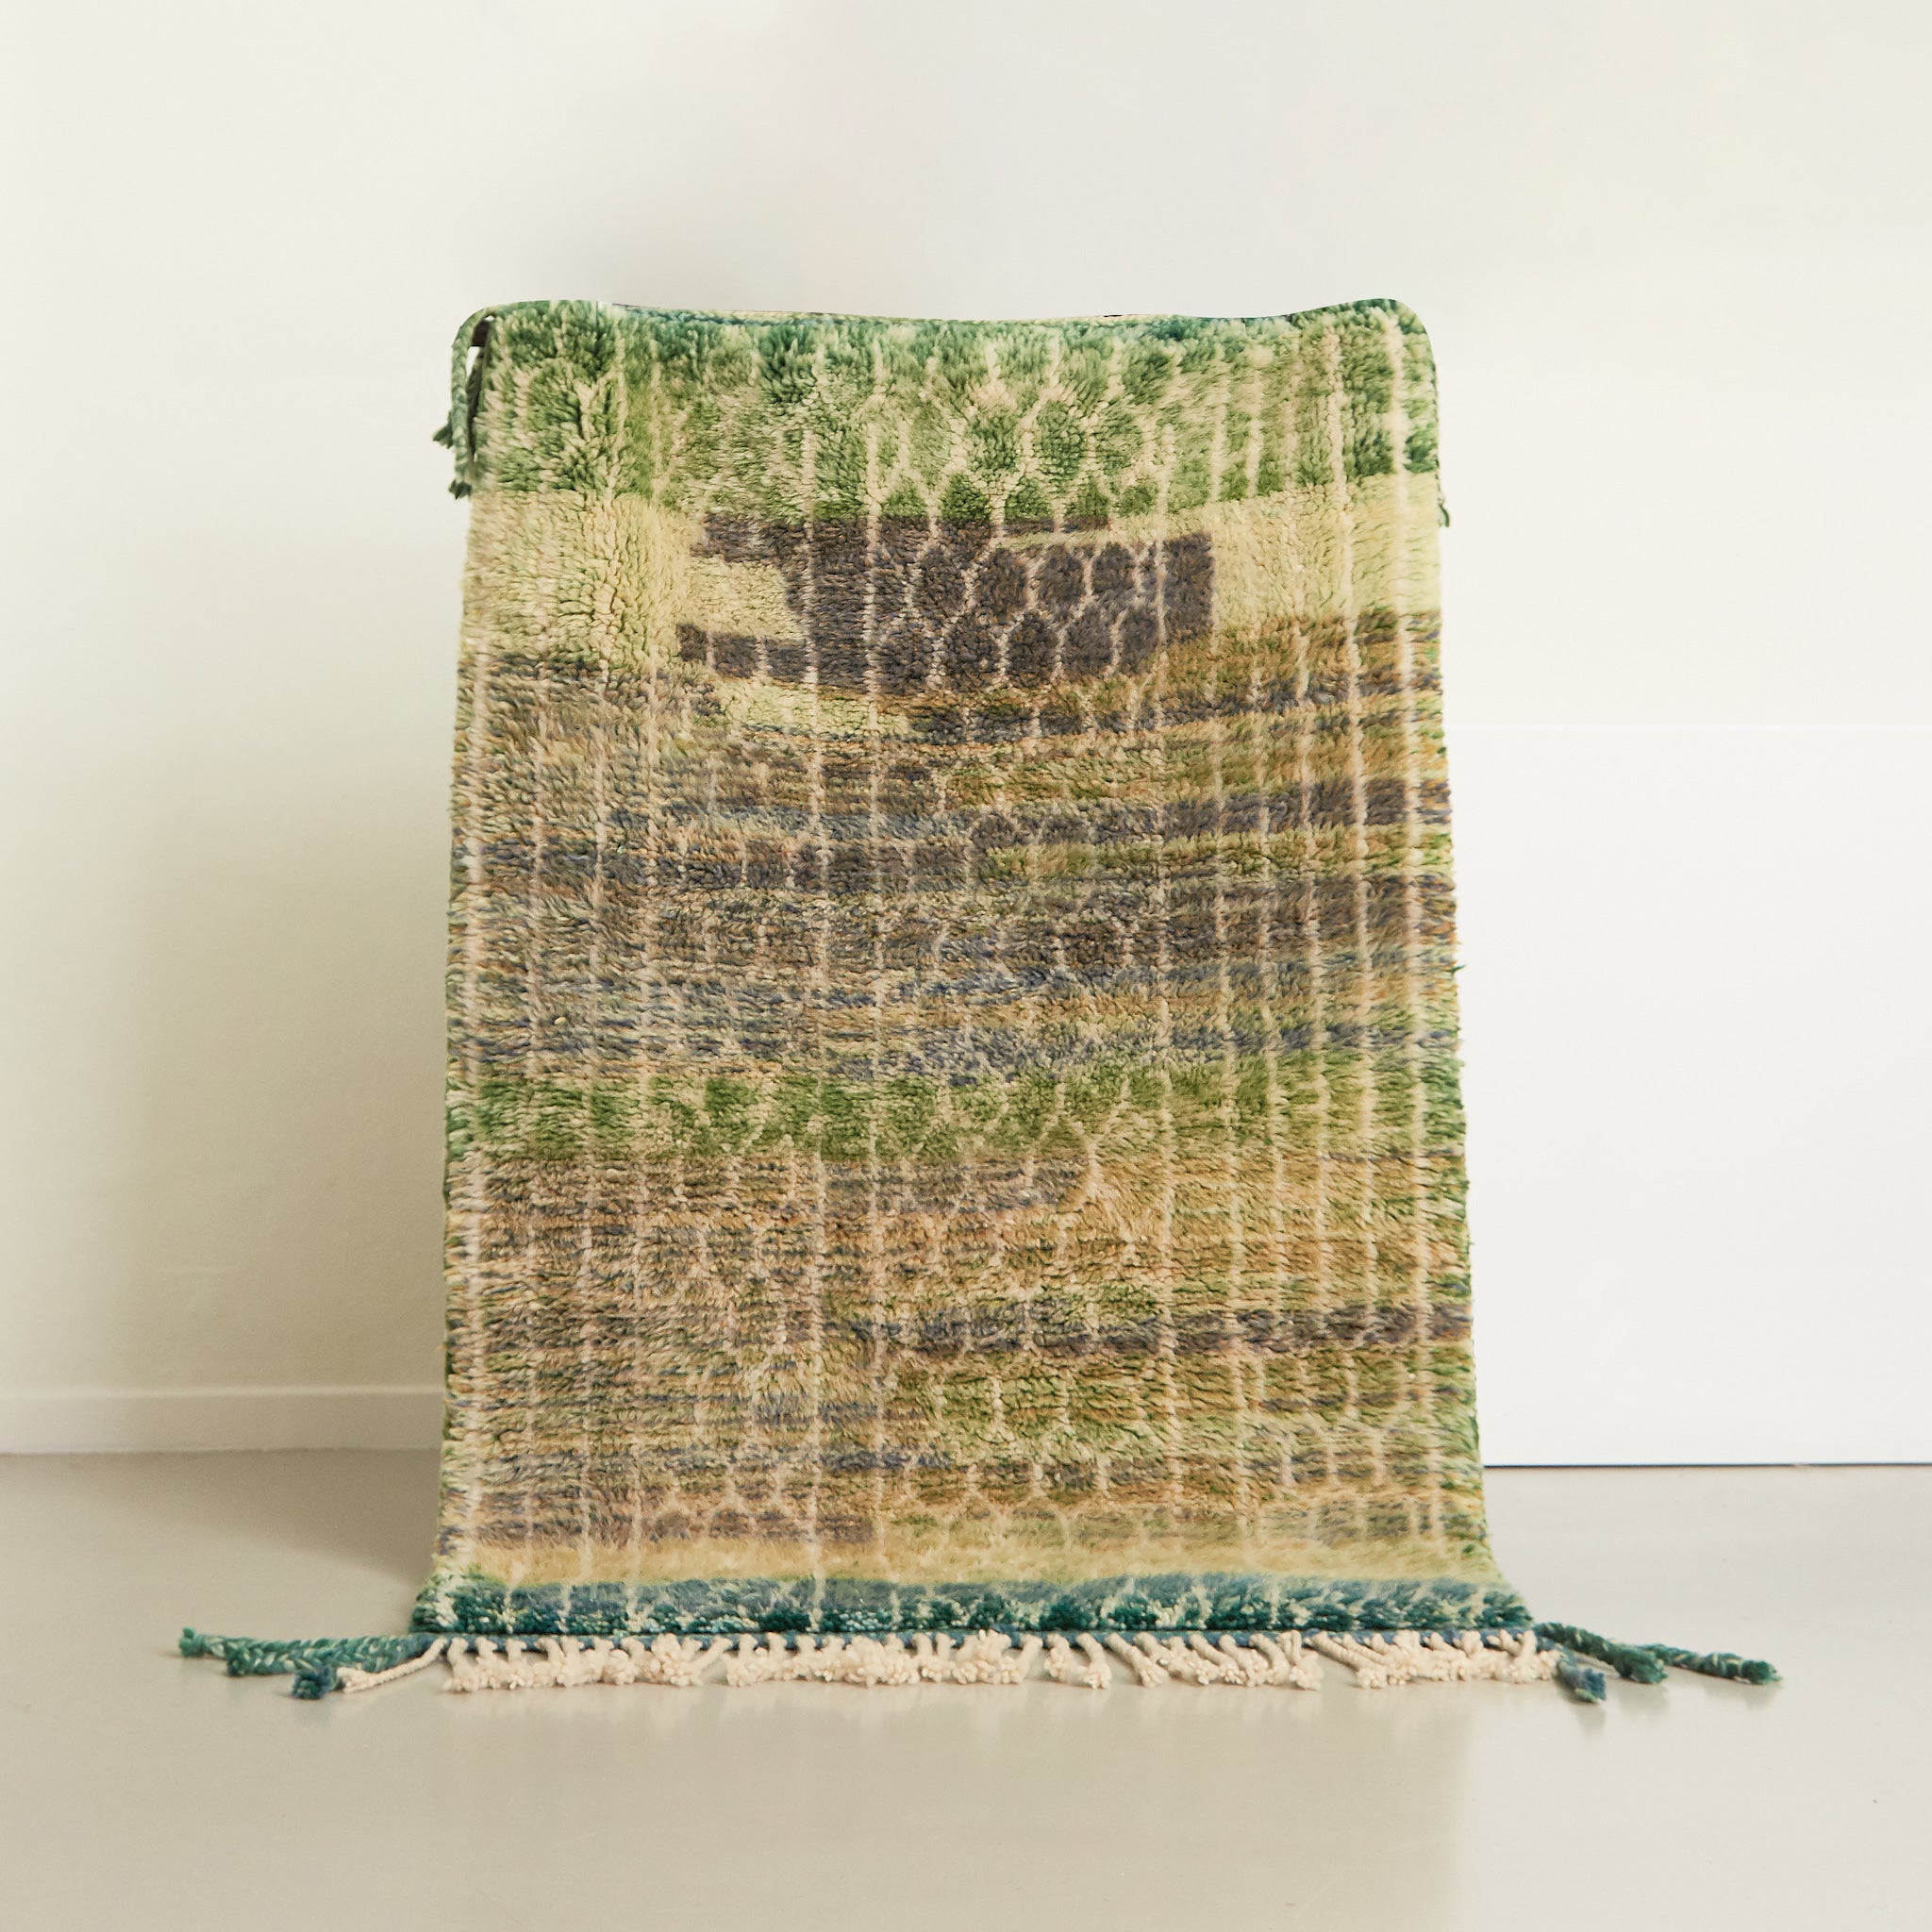 tappeto beni mrirt realizzato con morbida lana, la base del tappeto ha molte sfumature di verde e sono presenti delle linee bianche che formano un pattern creativo